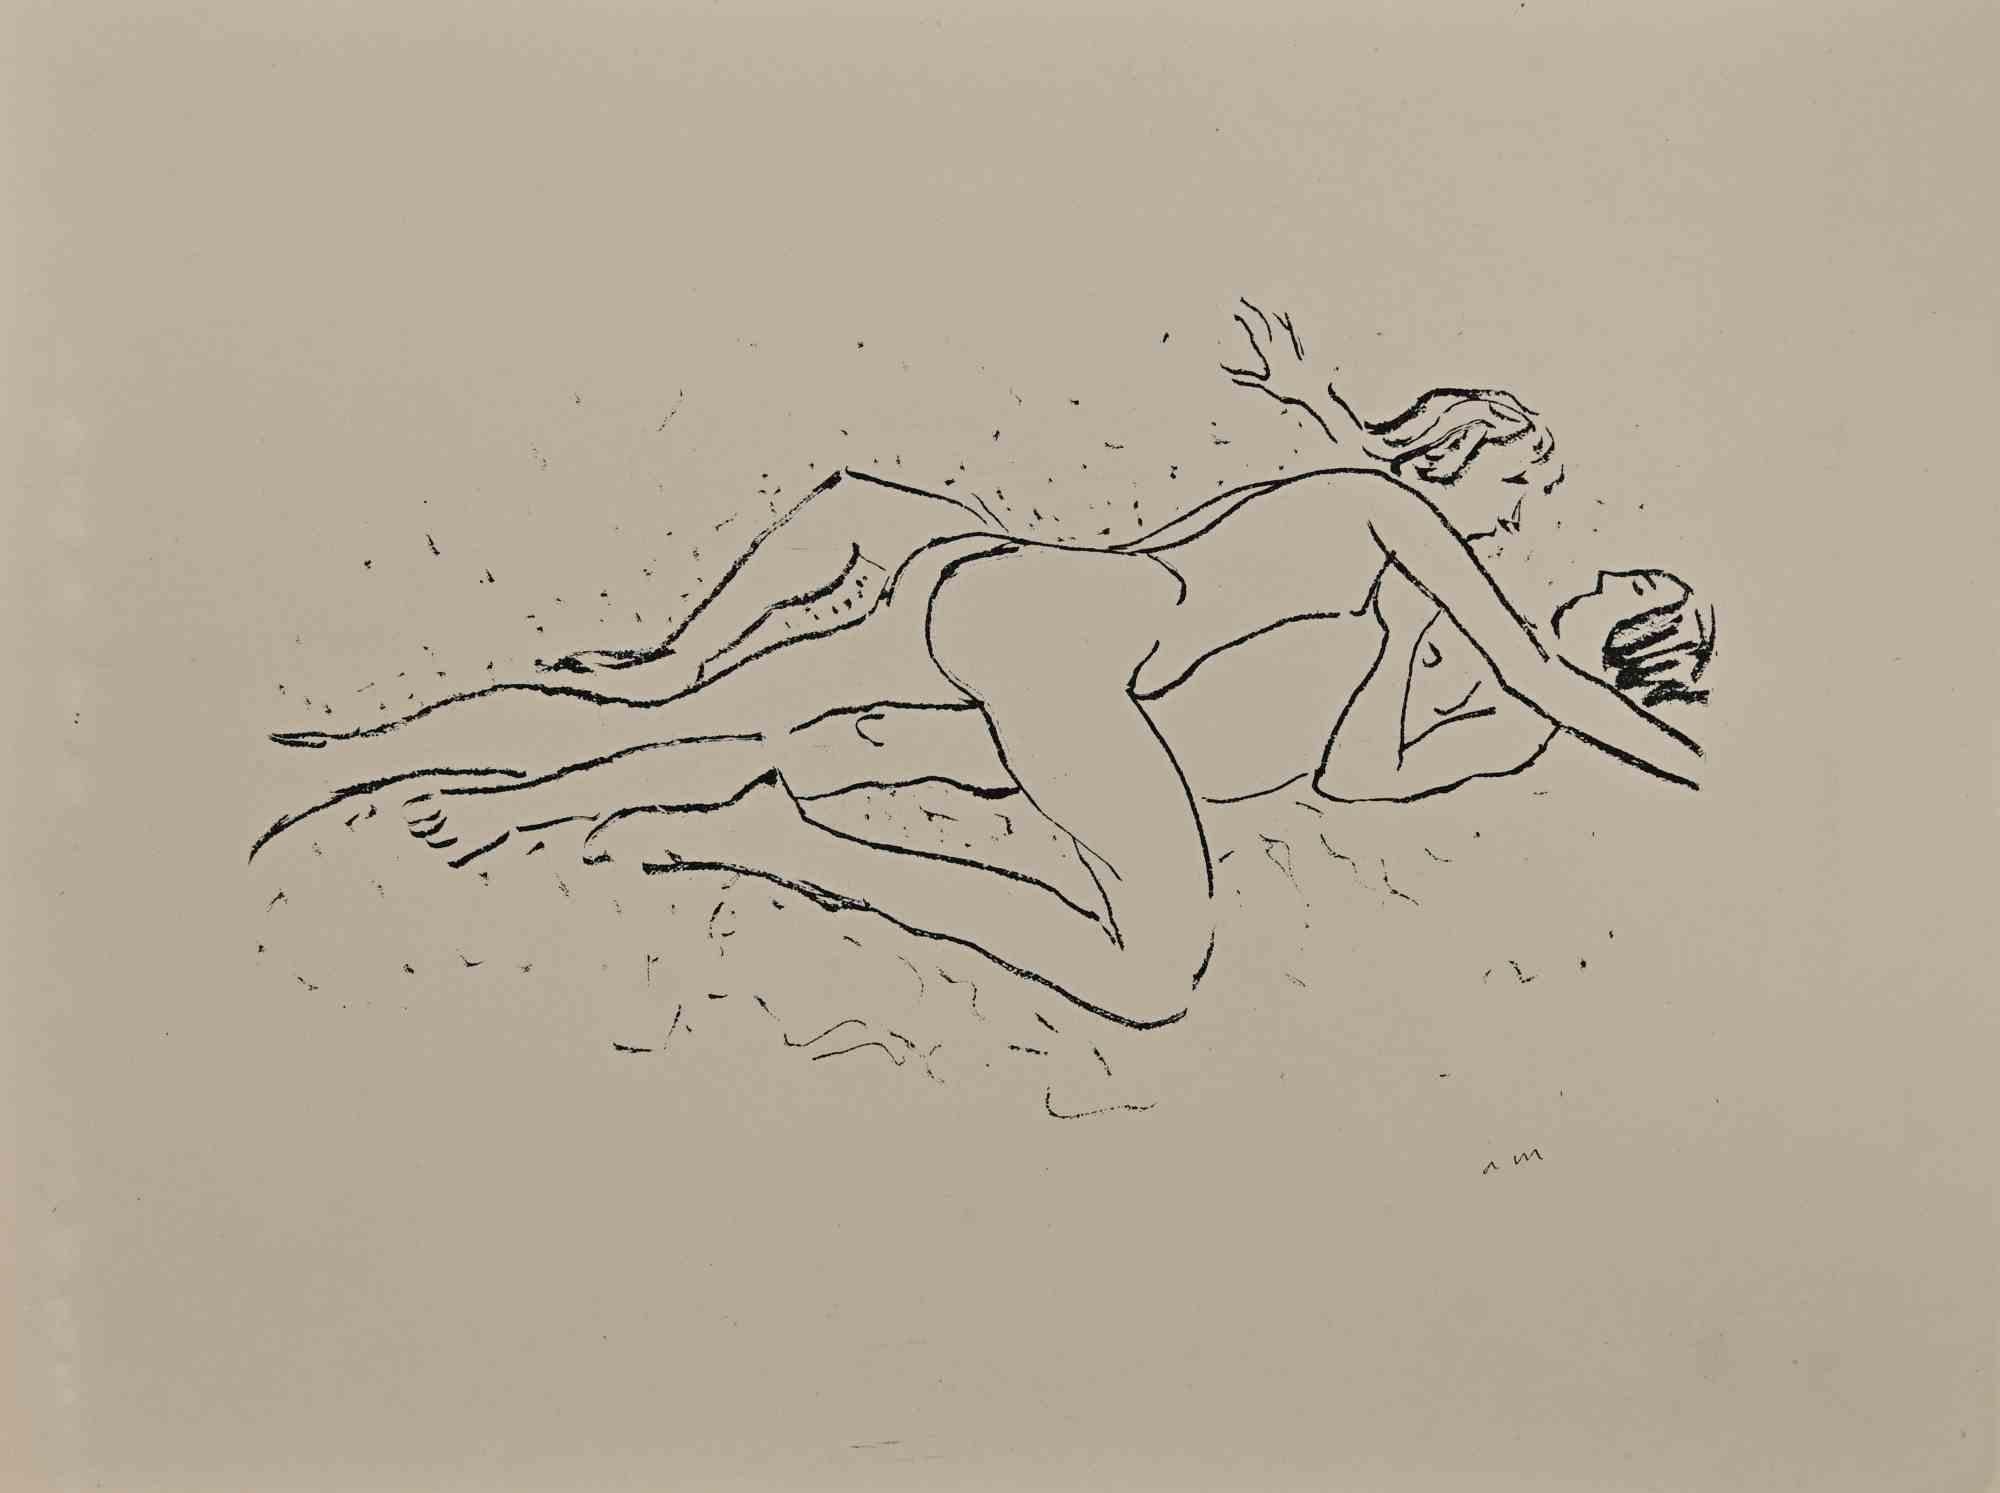 Erotic Scene ist eine wunderschöne Lithographie auf elfenbeinfarbenem Papier, die in den 1920er Jahren von Albert Marquet geschaffen wurde.  (Bordeaux, 1875 - Paris, 1947).

Monogrammiert auf der Platte am unteren Rand. Auf der Rückseite gestempelt